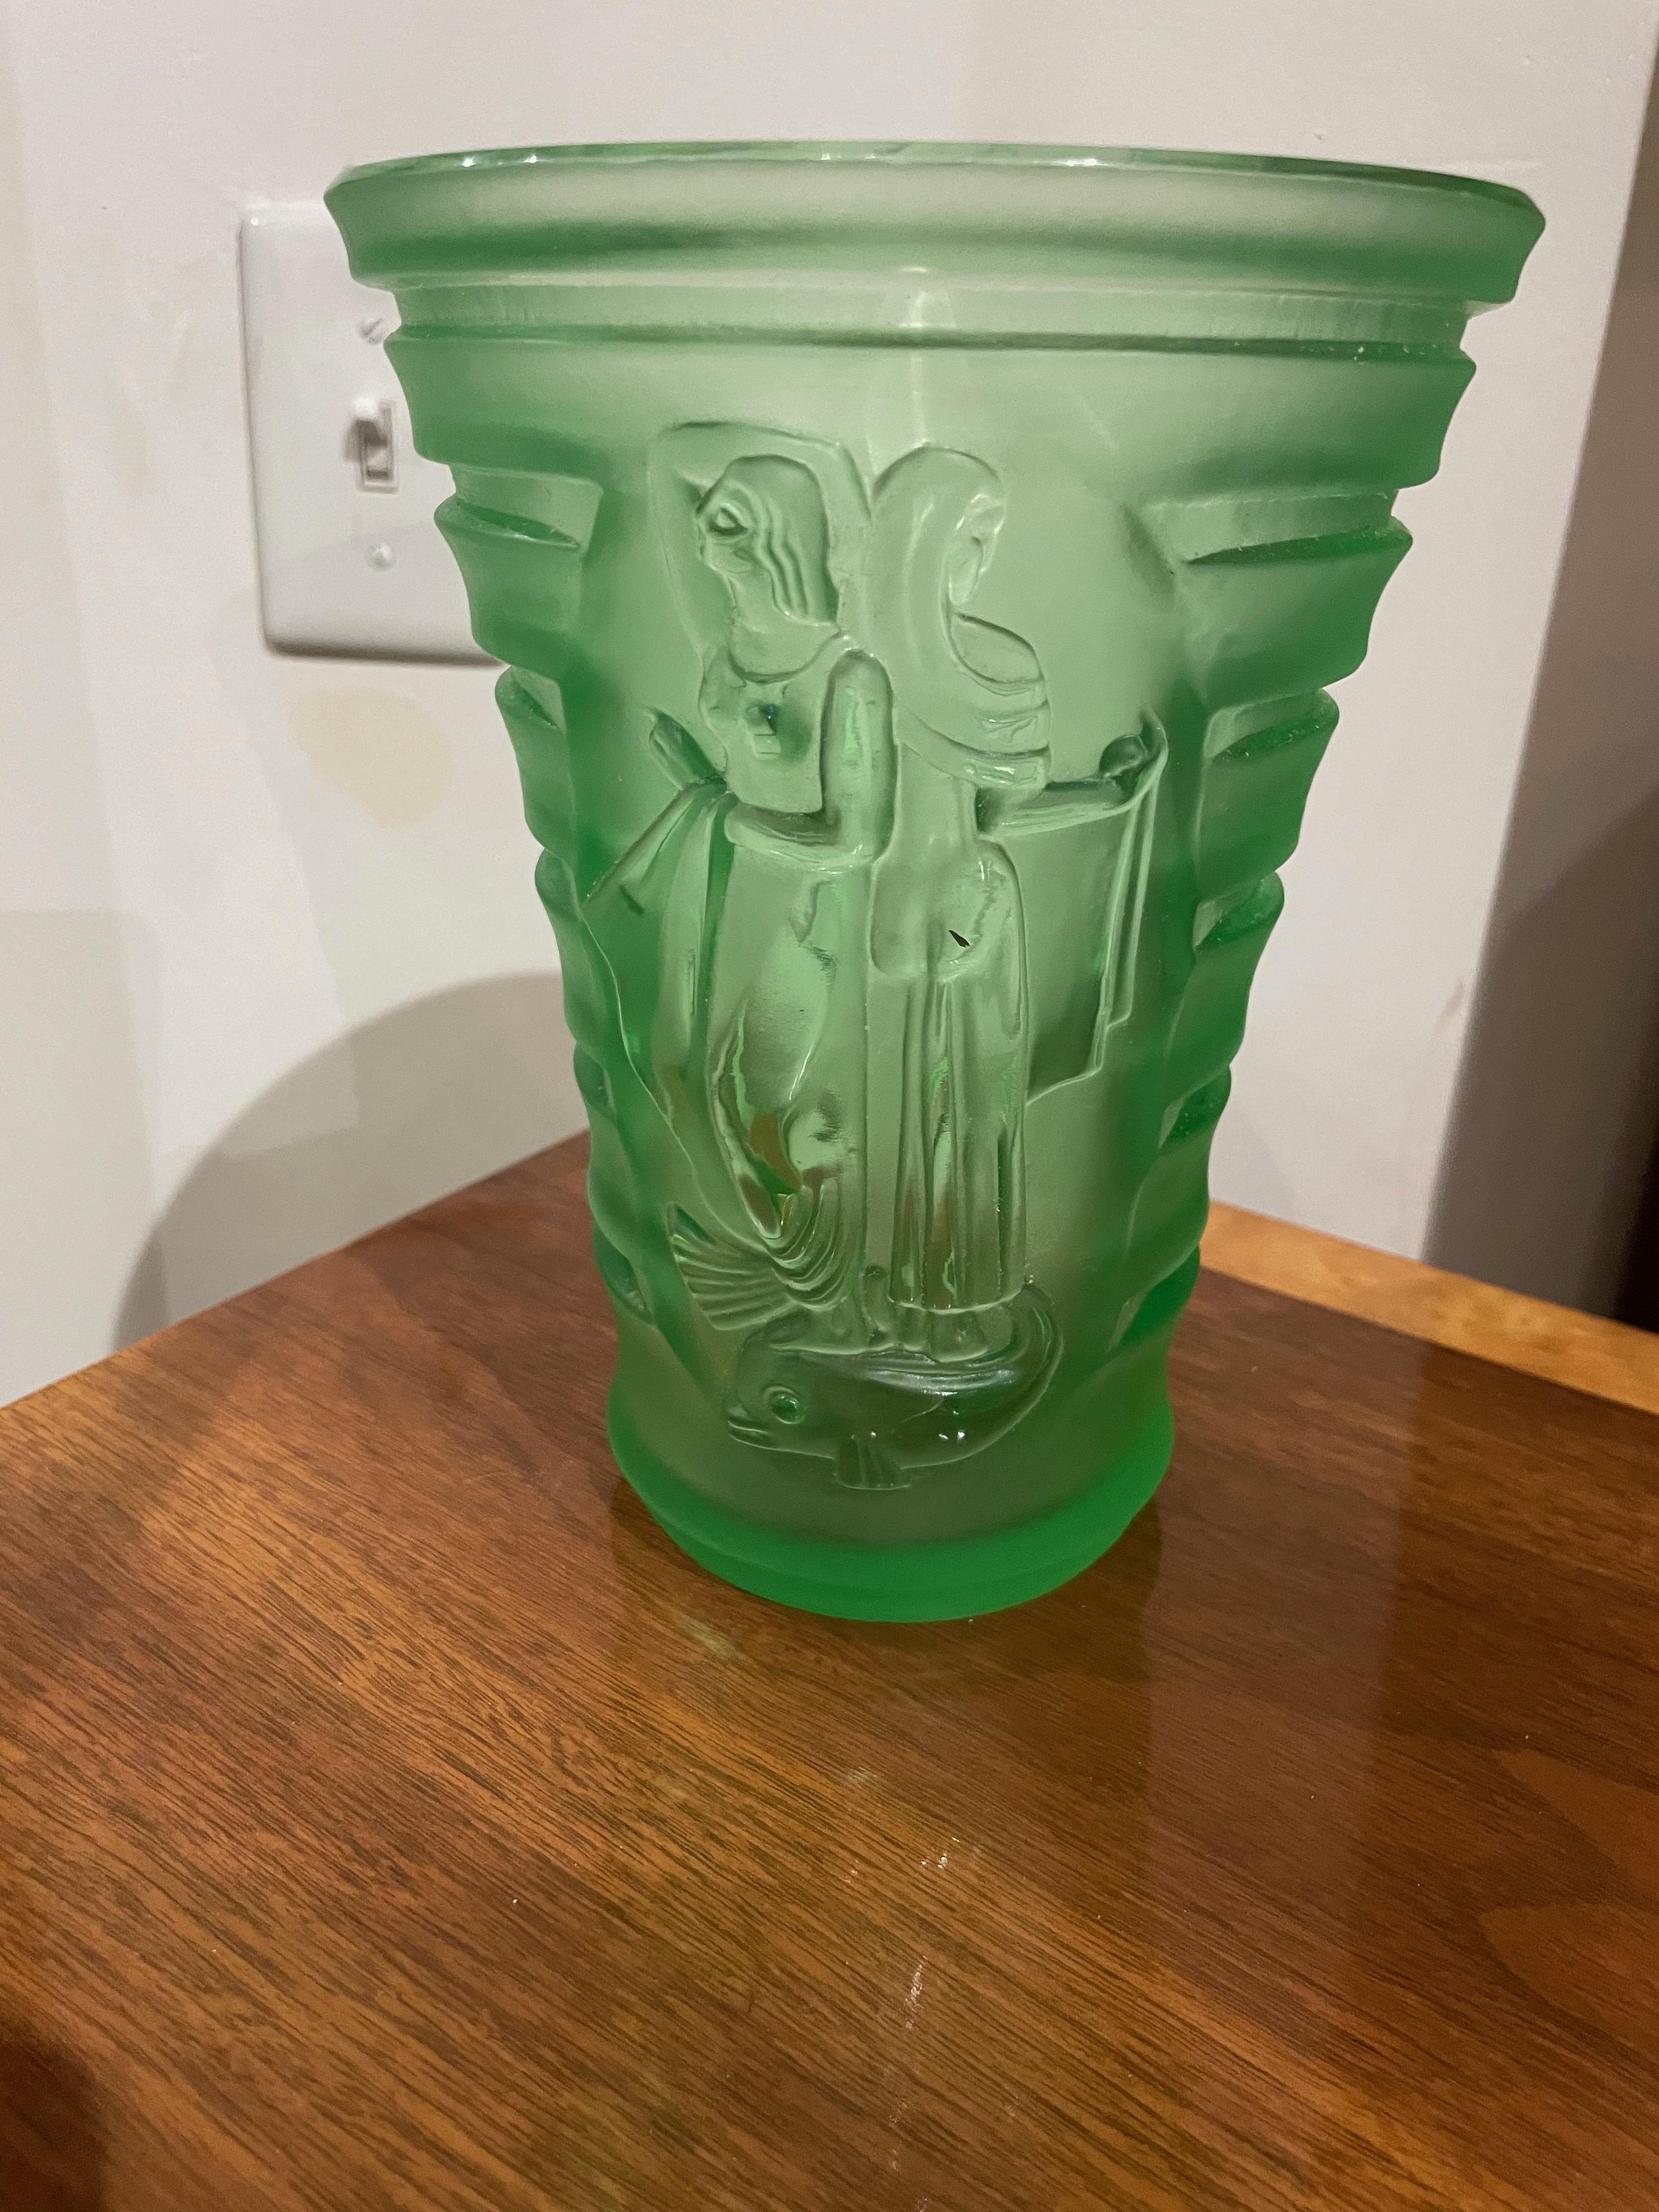 Art Deco geschnitzte grüne Glasvase mit Frau und Vögeln. Eine seltene und einzigartige Vase mit tiefer Schnitzerei zeigt stilisierte Frauen und Vögel im Art-Deco-Stil. Die schöne, schwere Vase eignet sich hervorragend für Blumen oder ein Display. Es